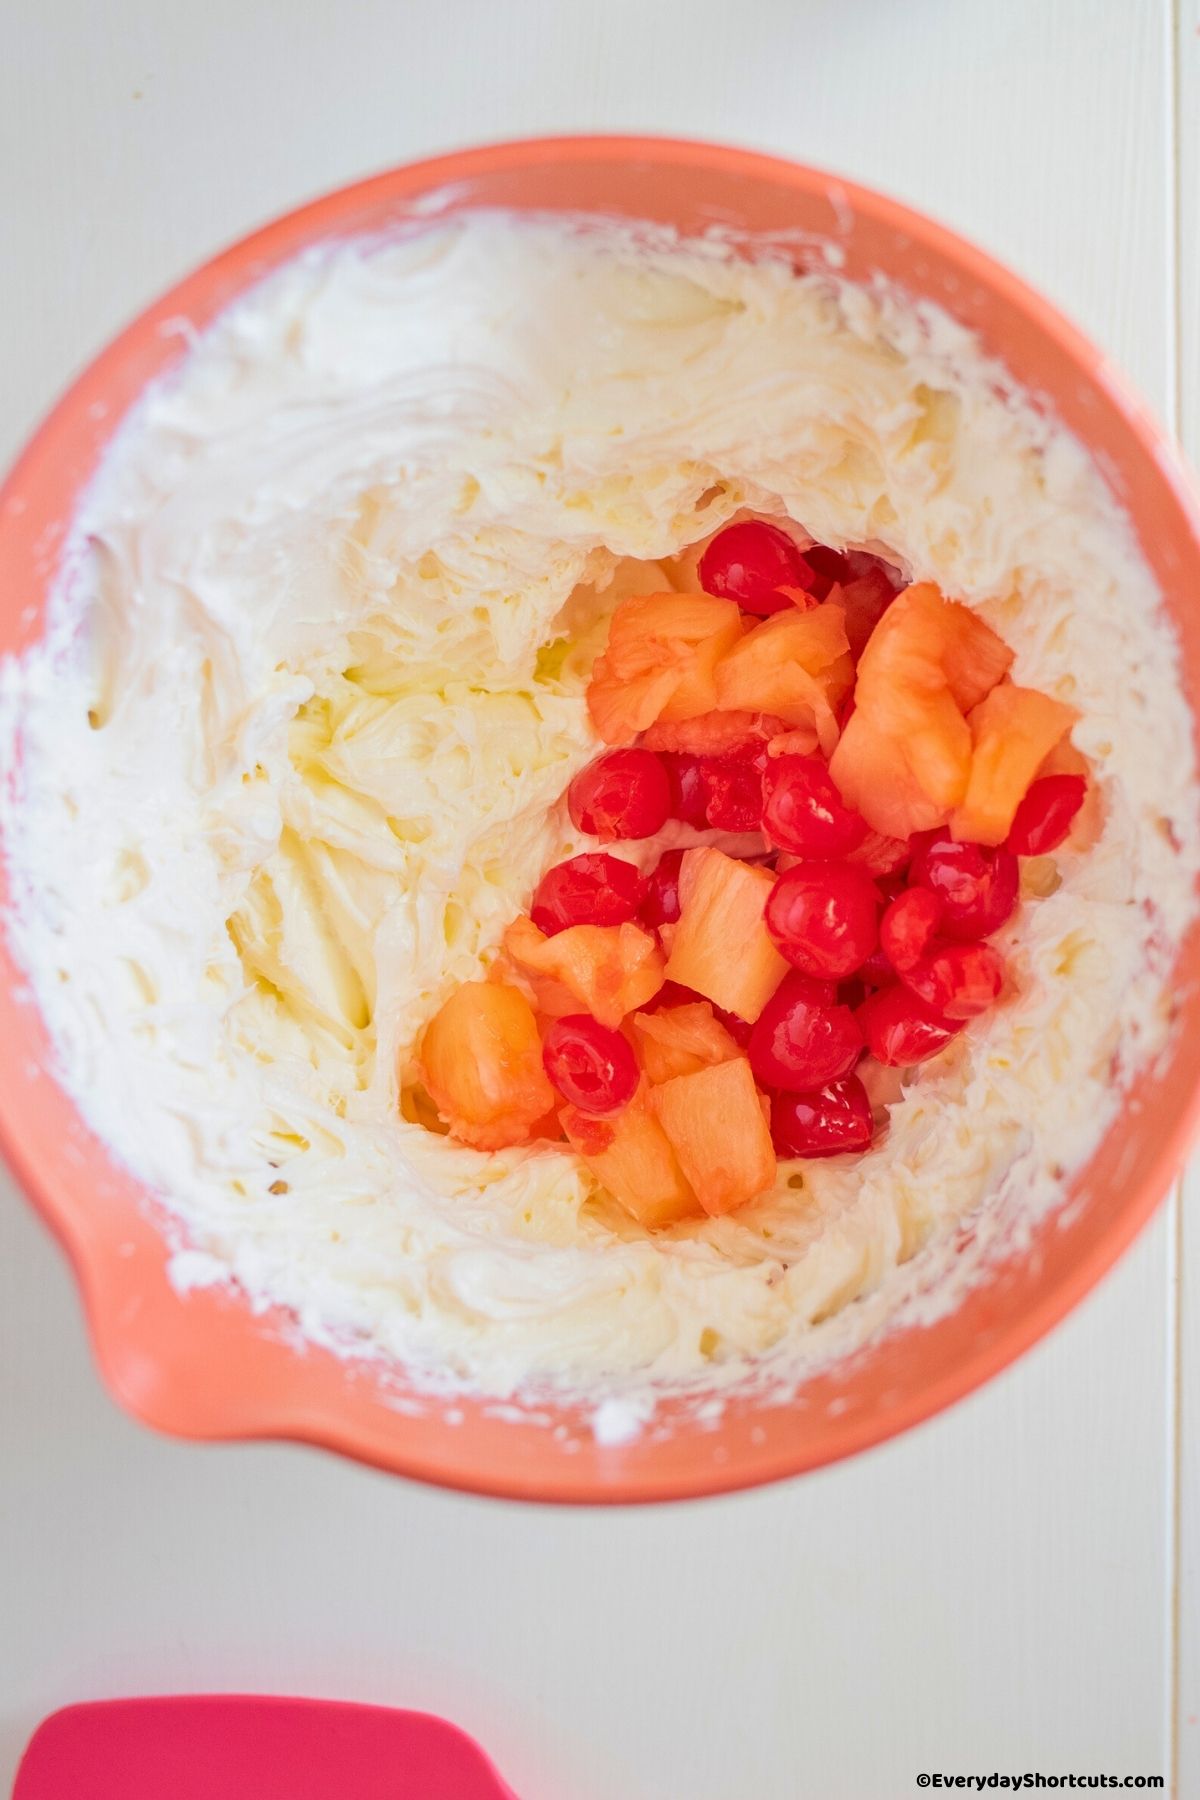 maraschino cherries mandarin oranges and pineapple chunks in cream cheese mixture